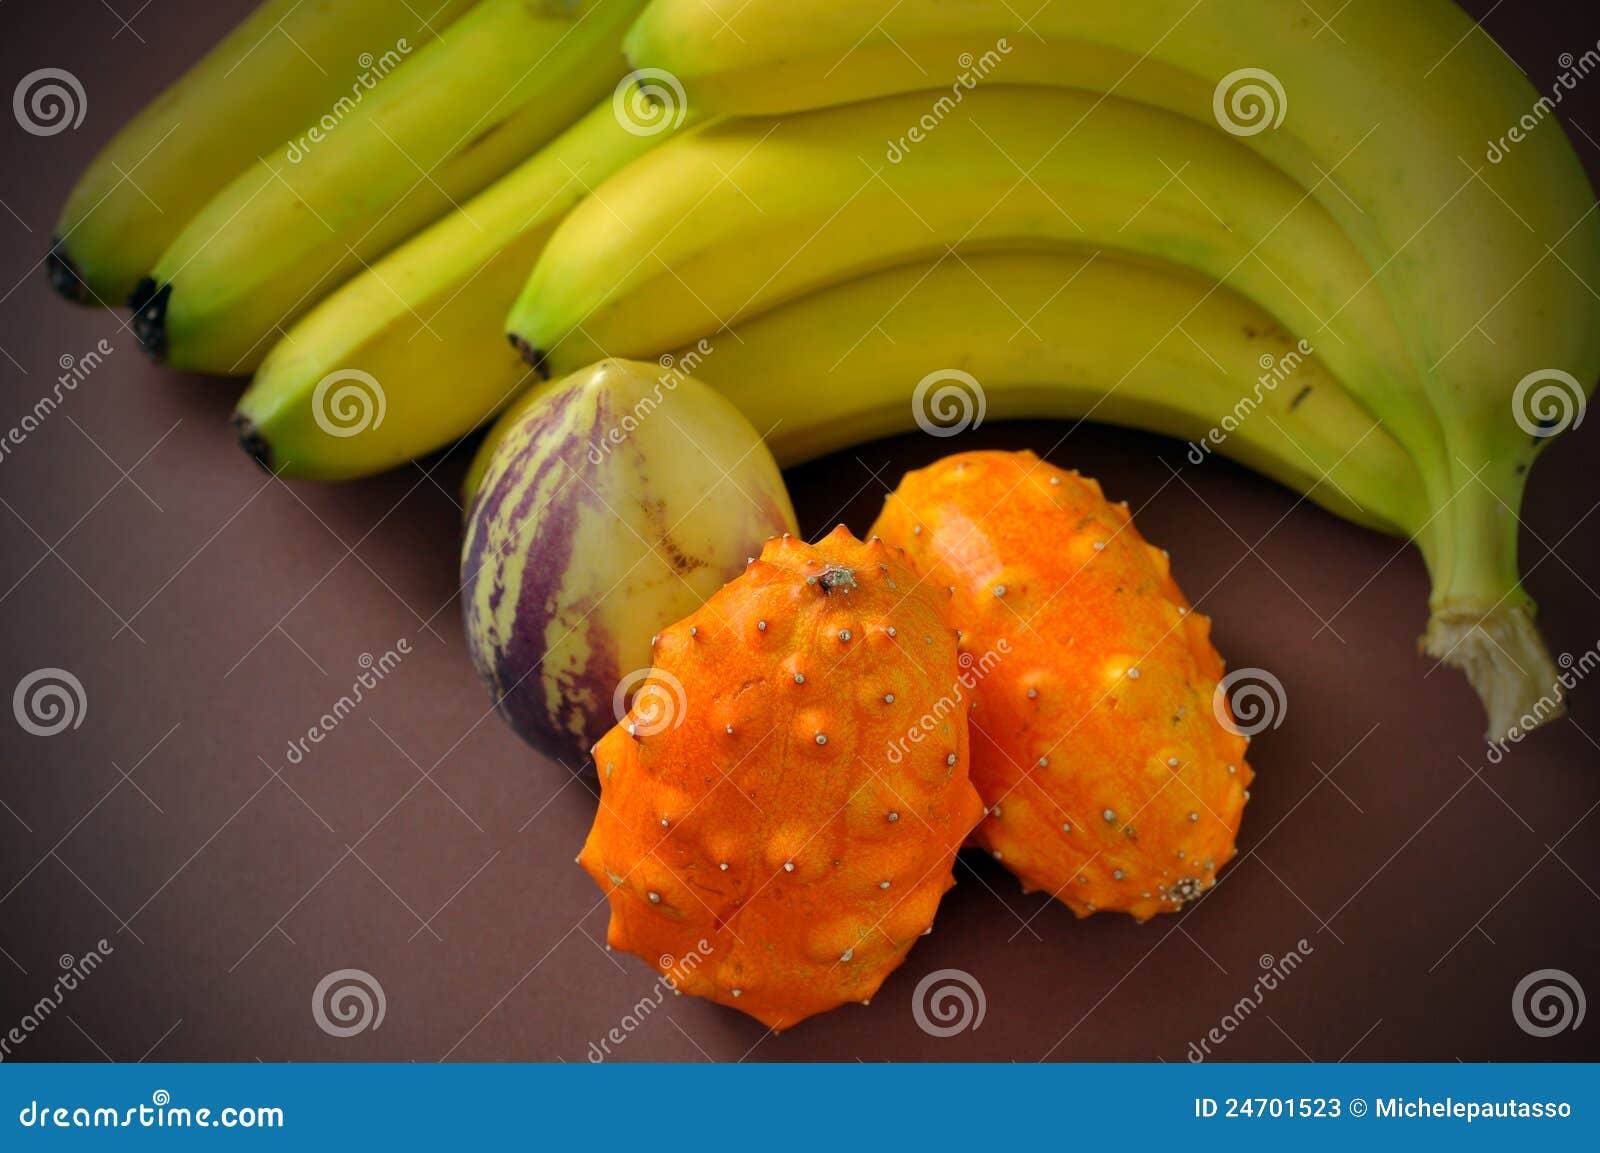 fruta del paraiso with bananas